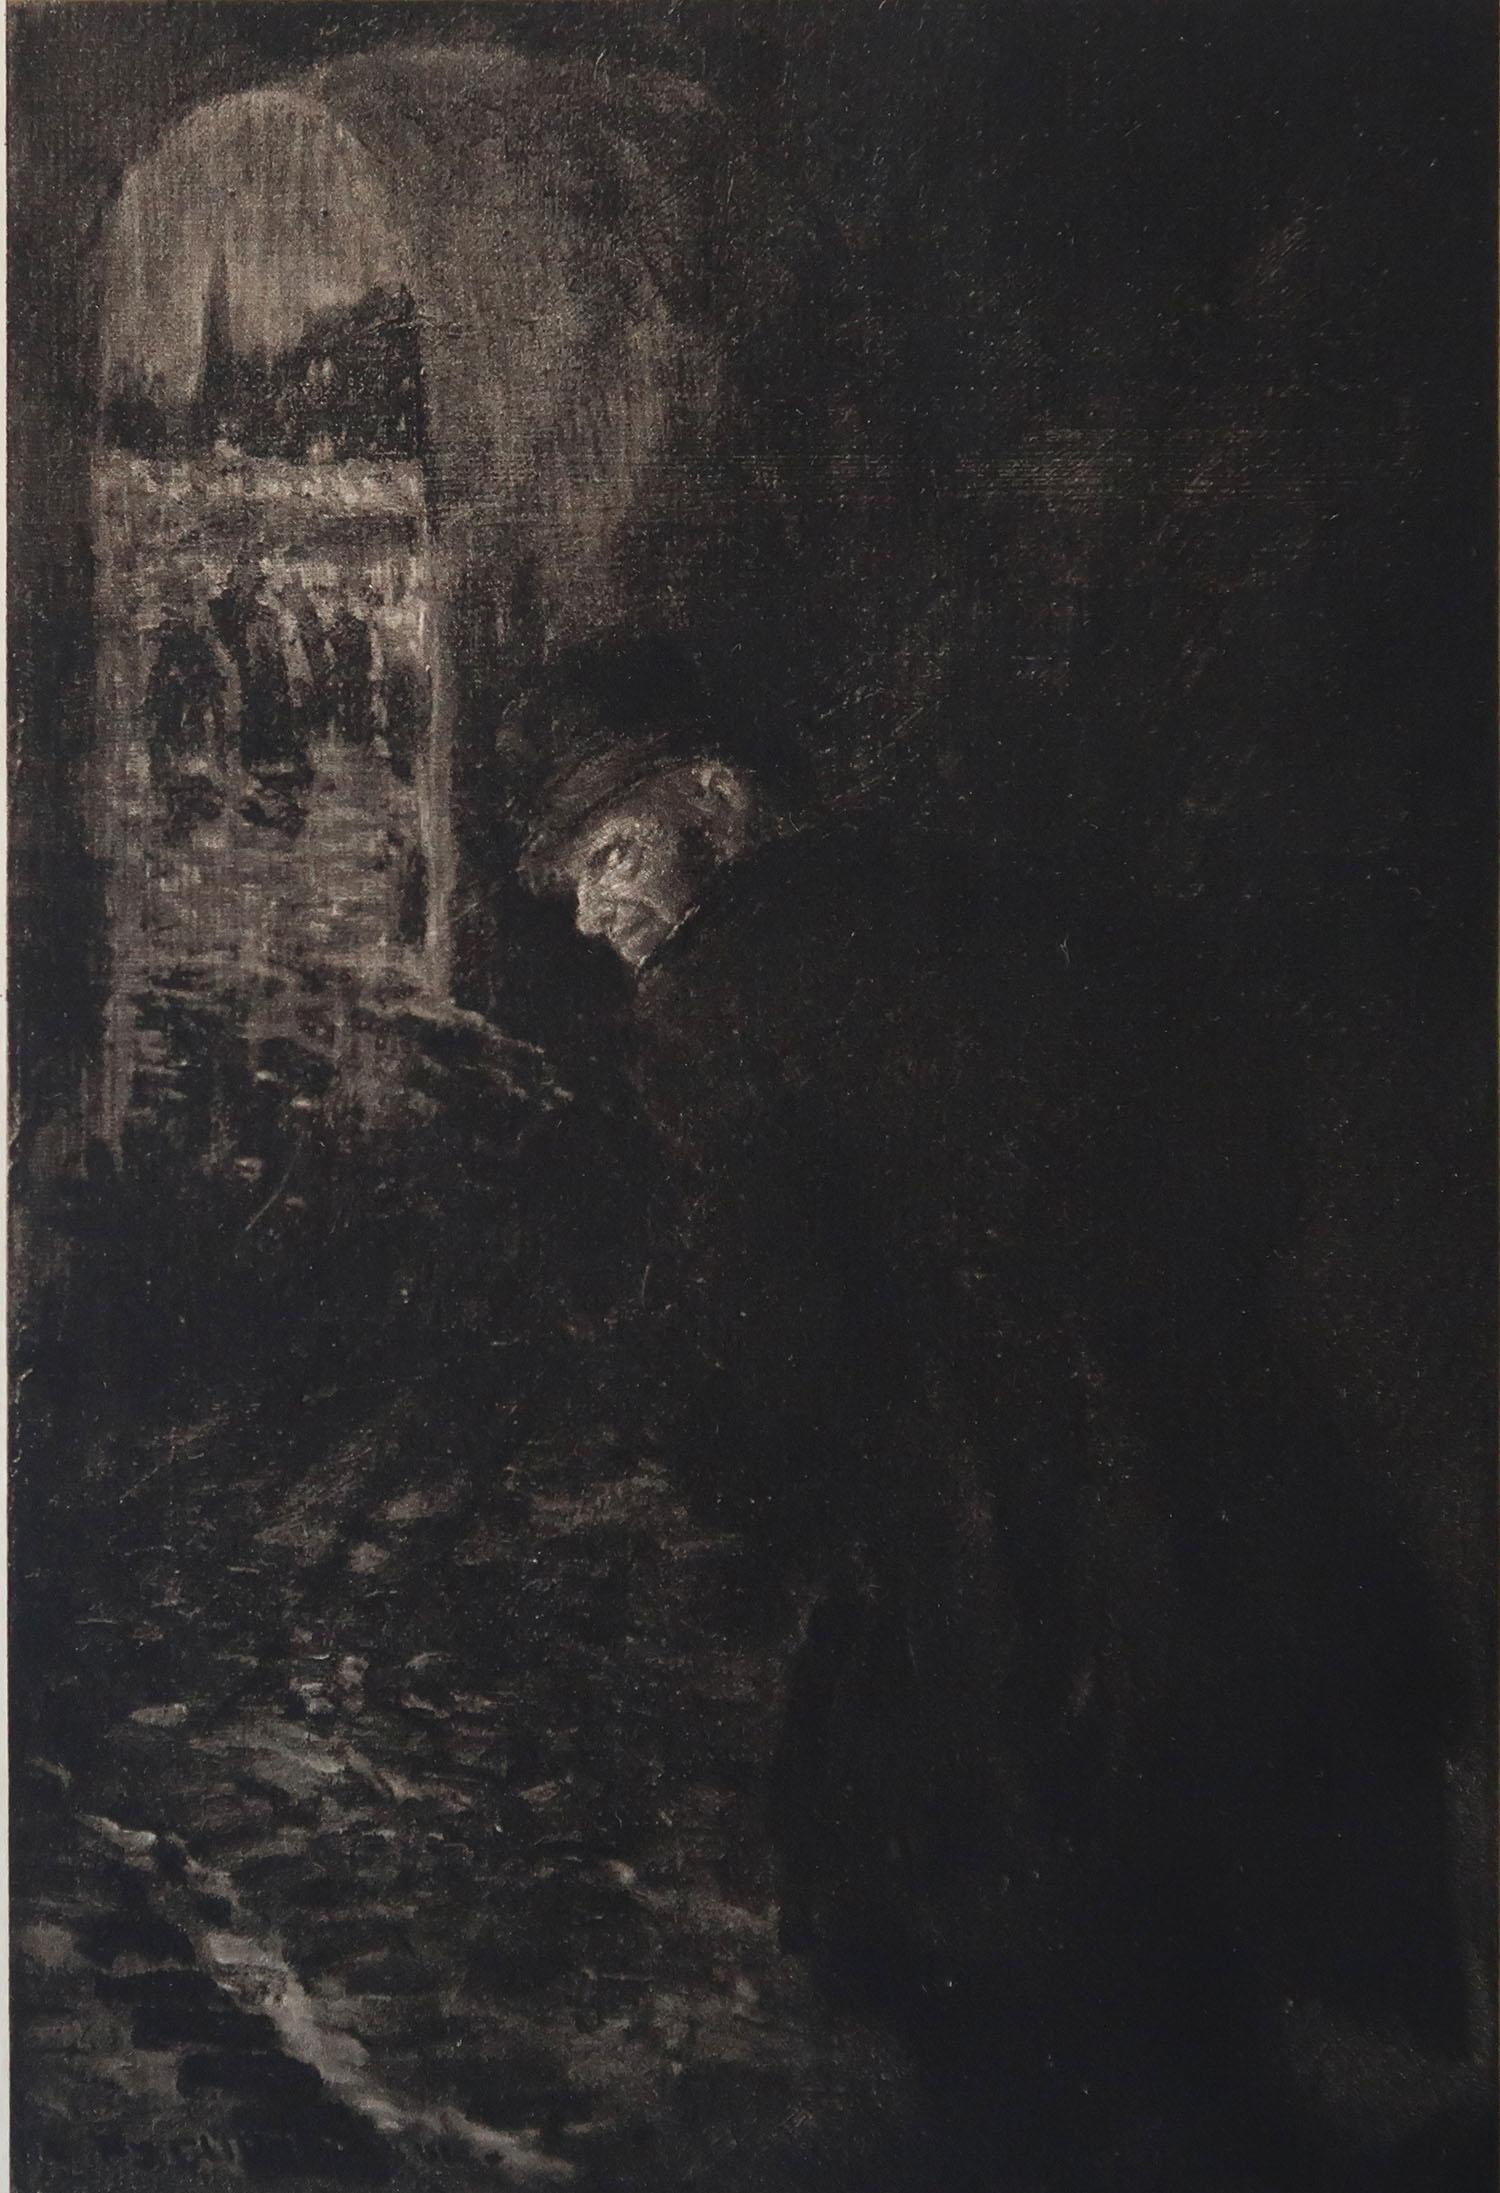 Sensationelles Bild von Frederick Simpson Coburn

In Anlehnung an einen meiner Lieblingskünstler, Goya

Fototiefdruck

Limitierte Auflage von 300 Stück. Dies ist Nr. 84

Aus den Gesamtwerken von Edgar Allen Poe

Herausgegeben von Putnam,